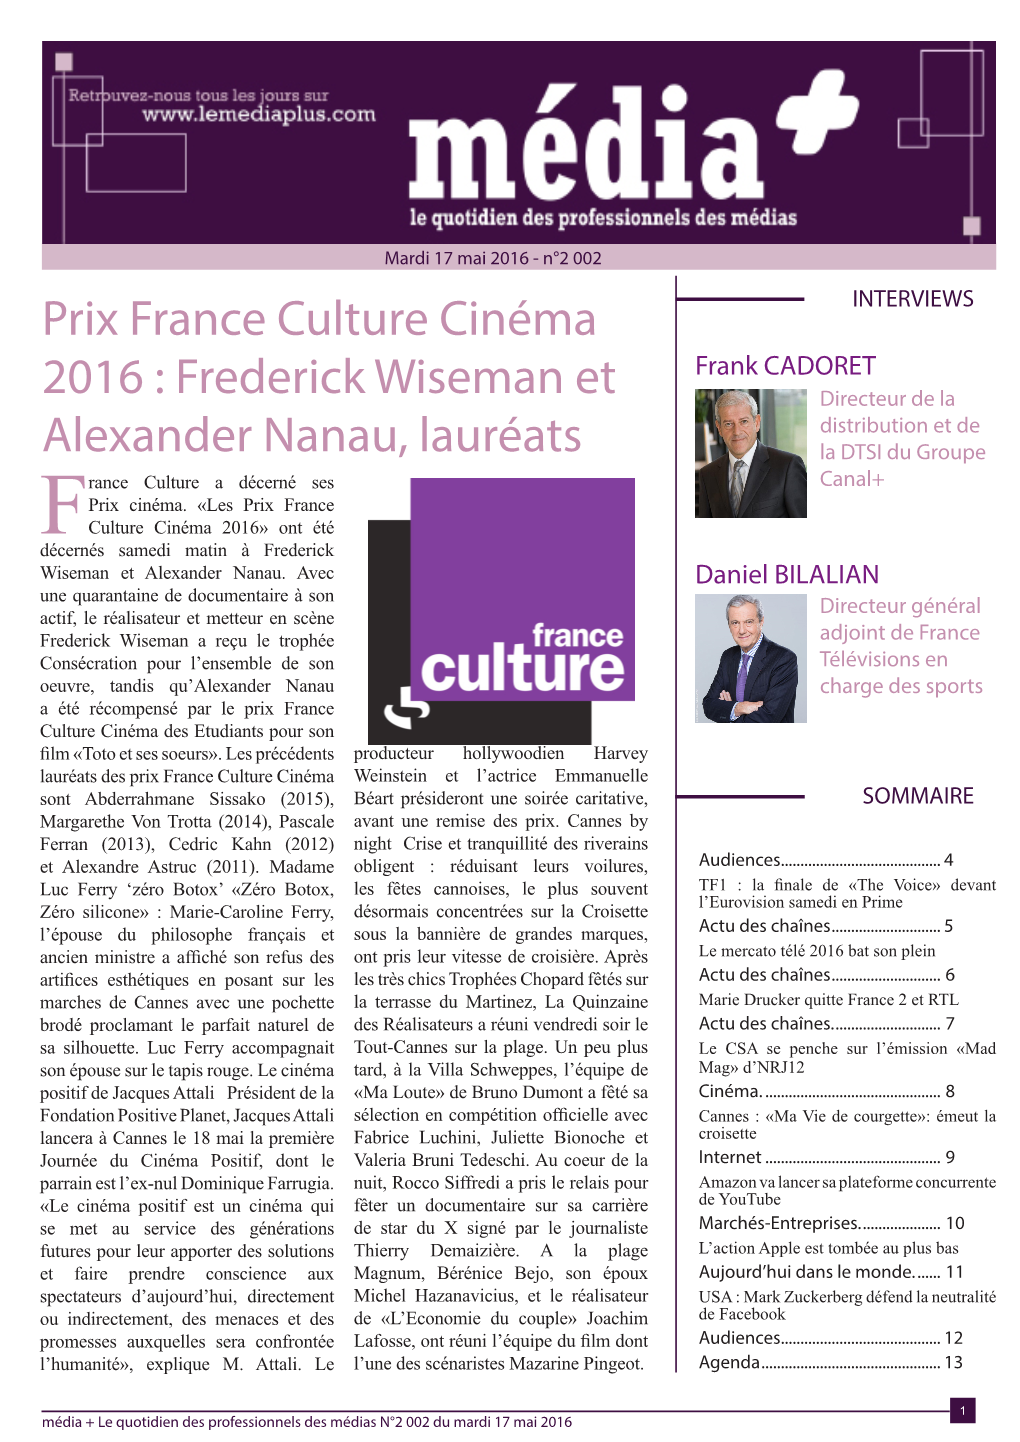 Prix France Culture Cinéma 2016 : Frederick Wiseman Et